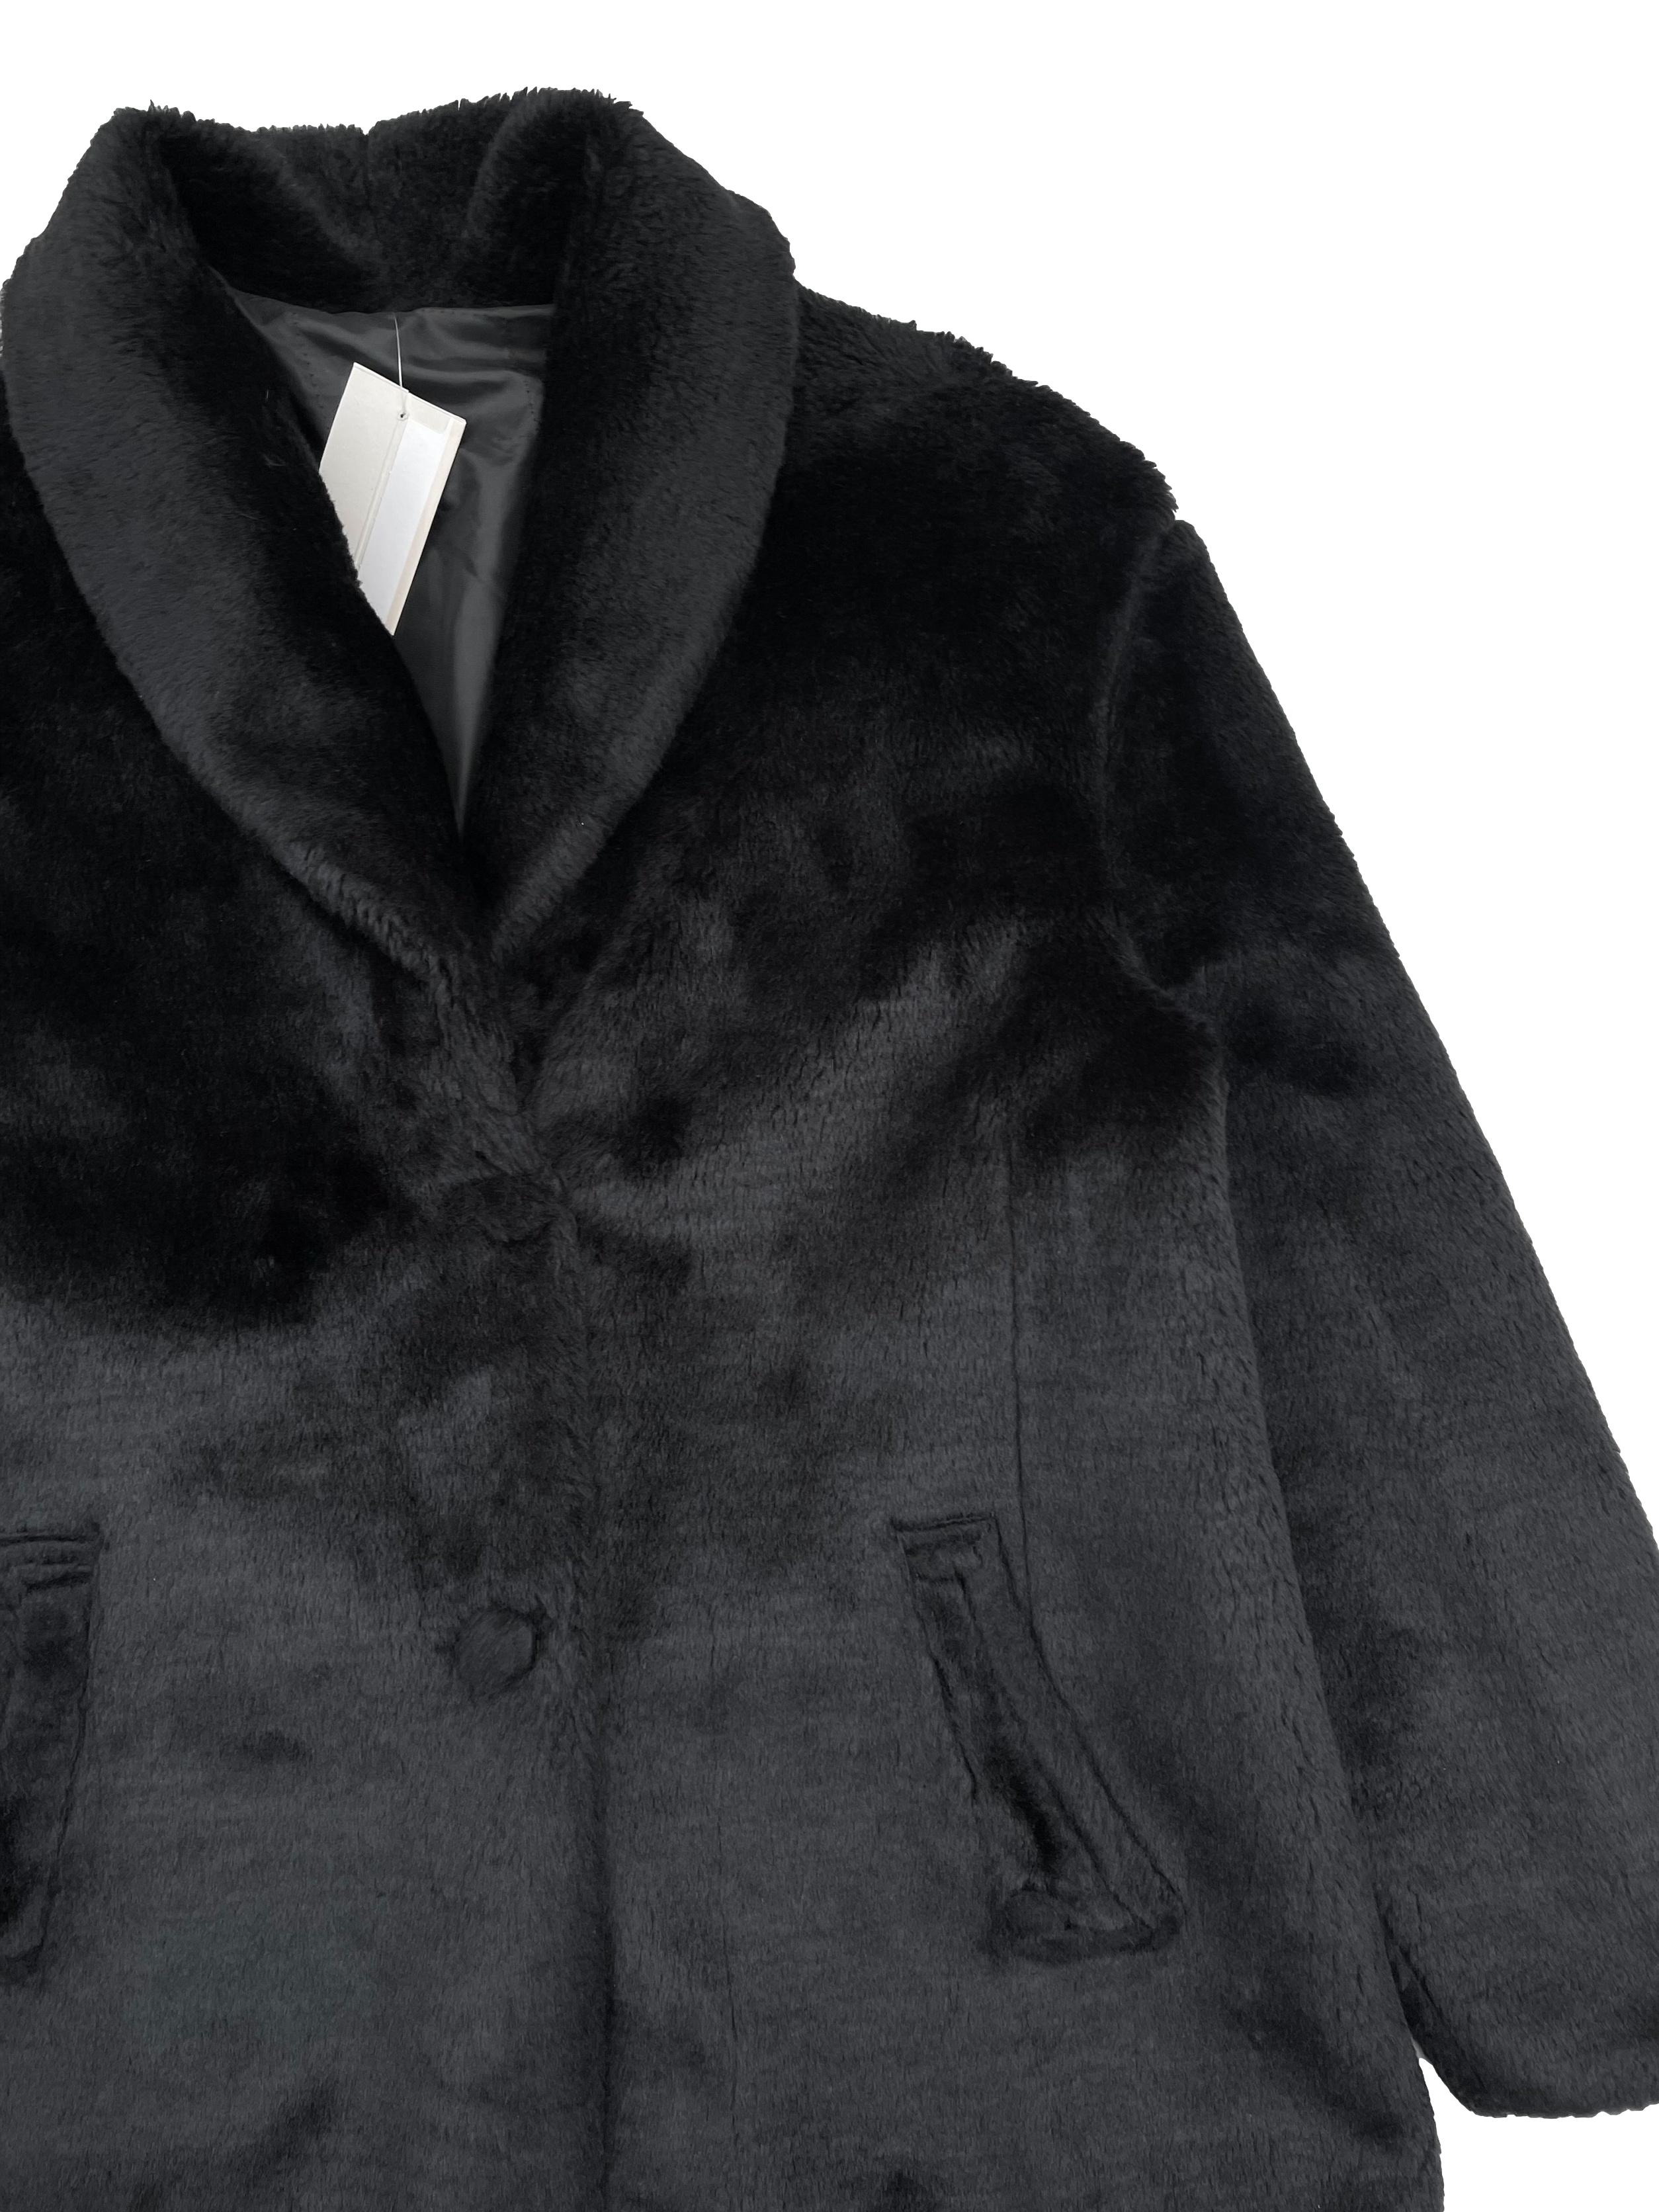 Abrigo negro efecto peluche, forrado, con bolsillos y botones. Busto 105cm Largo 62cm